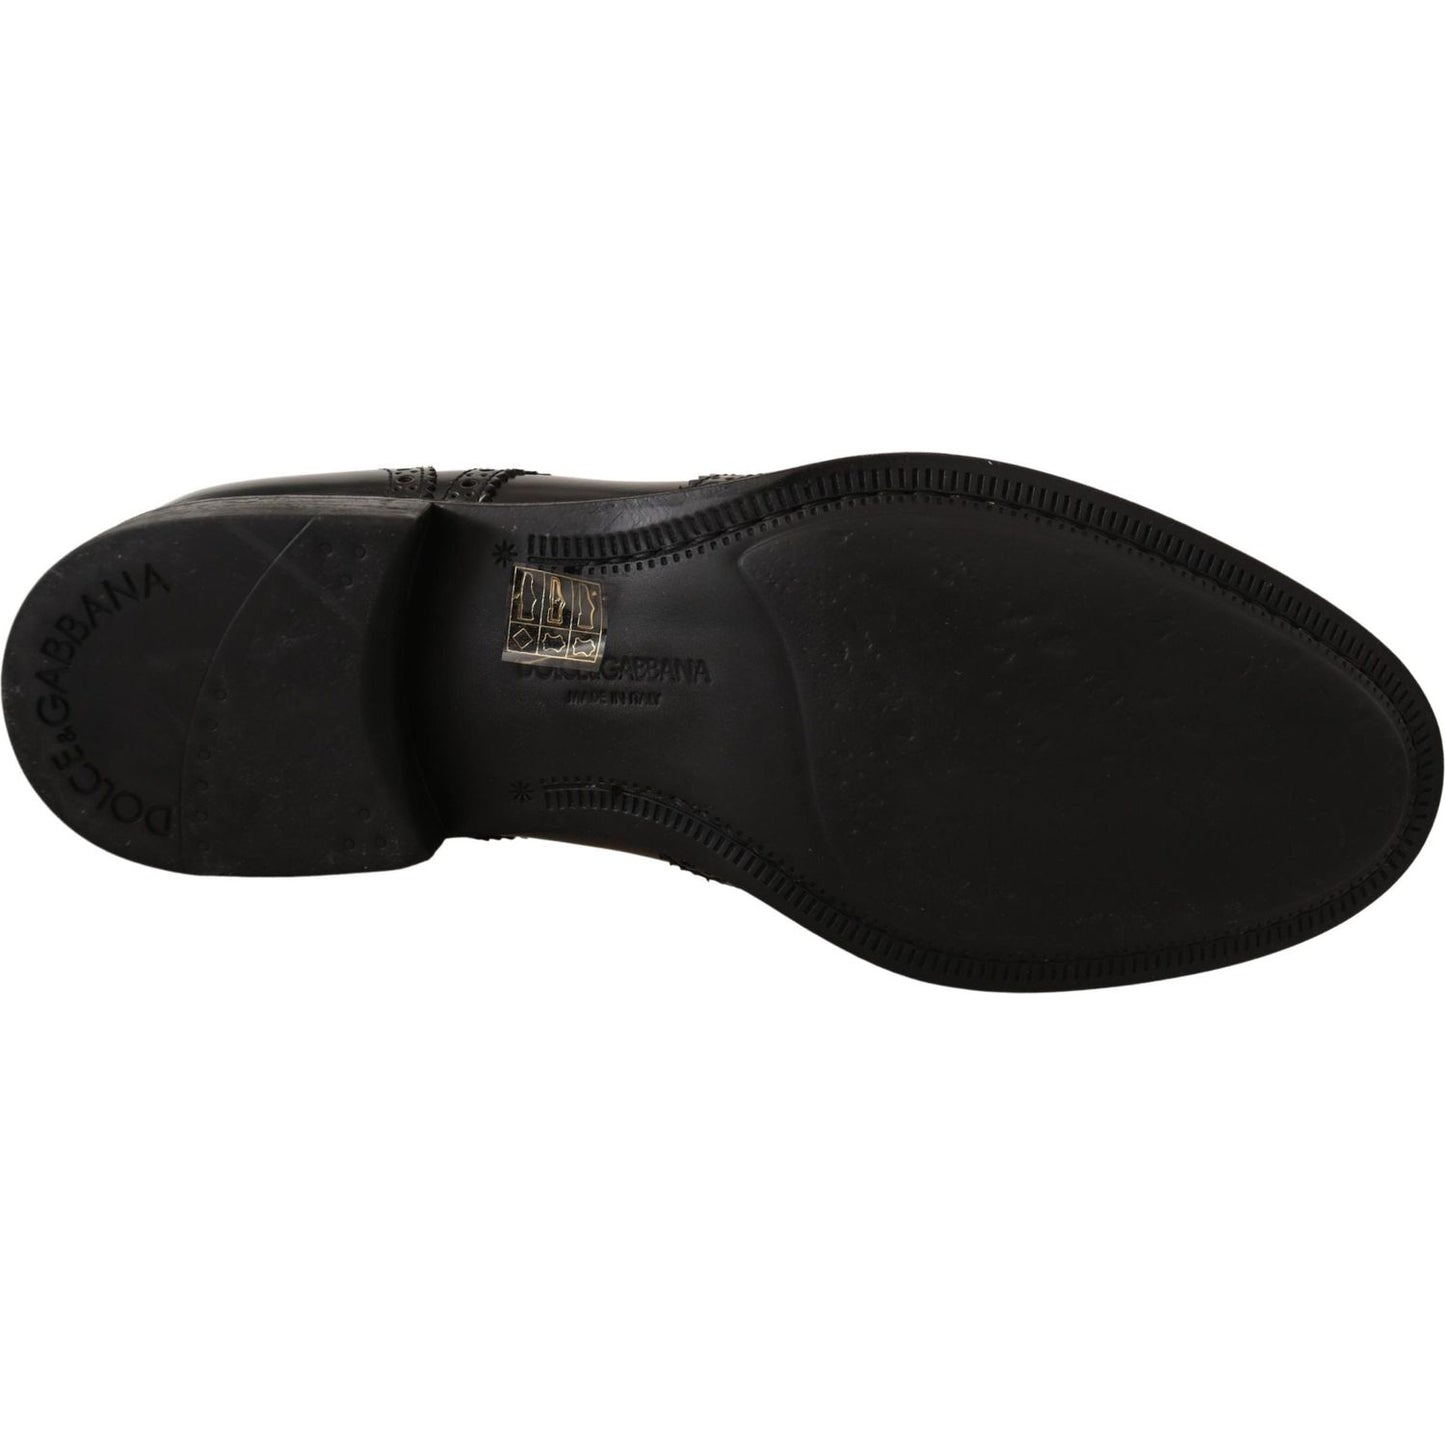 Dolce & Gabbana Elegant Wingtip Derby Oxford Shoes black-leather-oxford-wingtip-formal-shoes